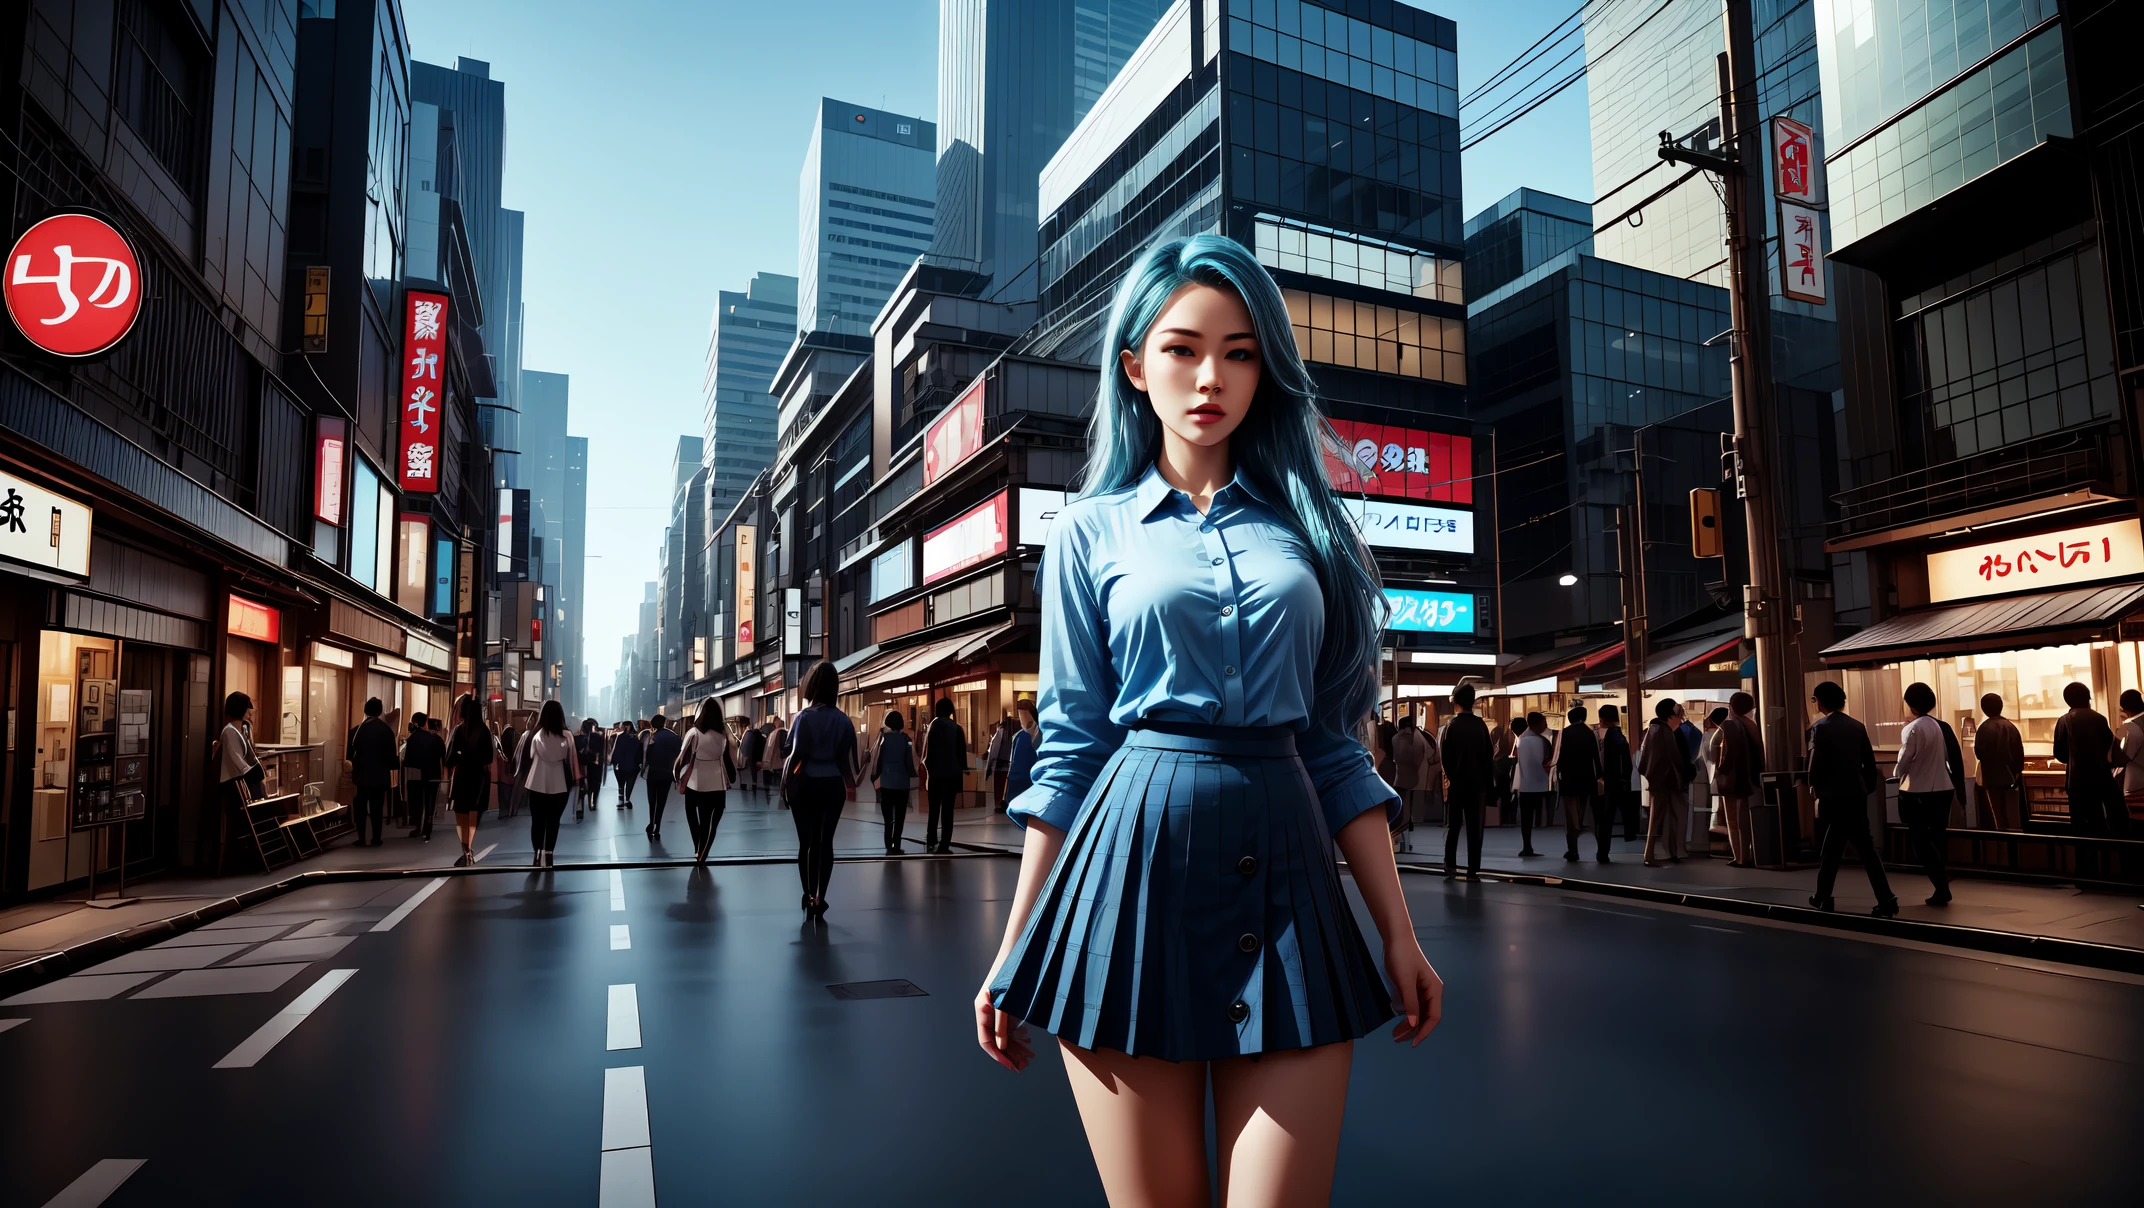 傑作, 最好的品質, 8K, 照相現實, 實際的, 辛烷渲染, 日本繁華的城市街道 (1 名女性: 1.2), (銀幕上只有一個女人: 1.5), (藍色蕾絲紐扣襯衫), (藍色的長髮), (包臀裙), (藍眼睛), 漂亮的包覆式高跟鞋, 上身展示,(全身)